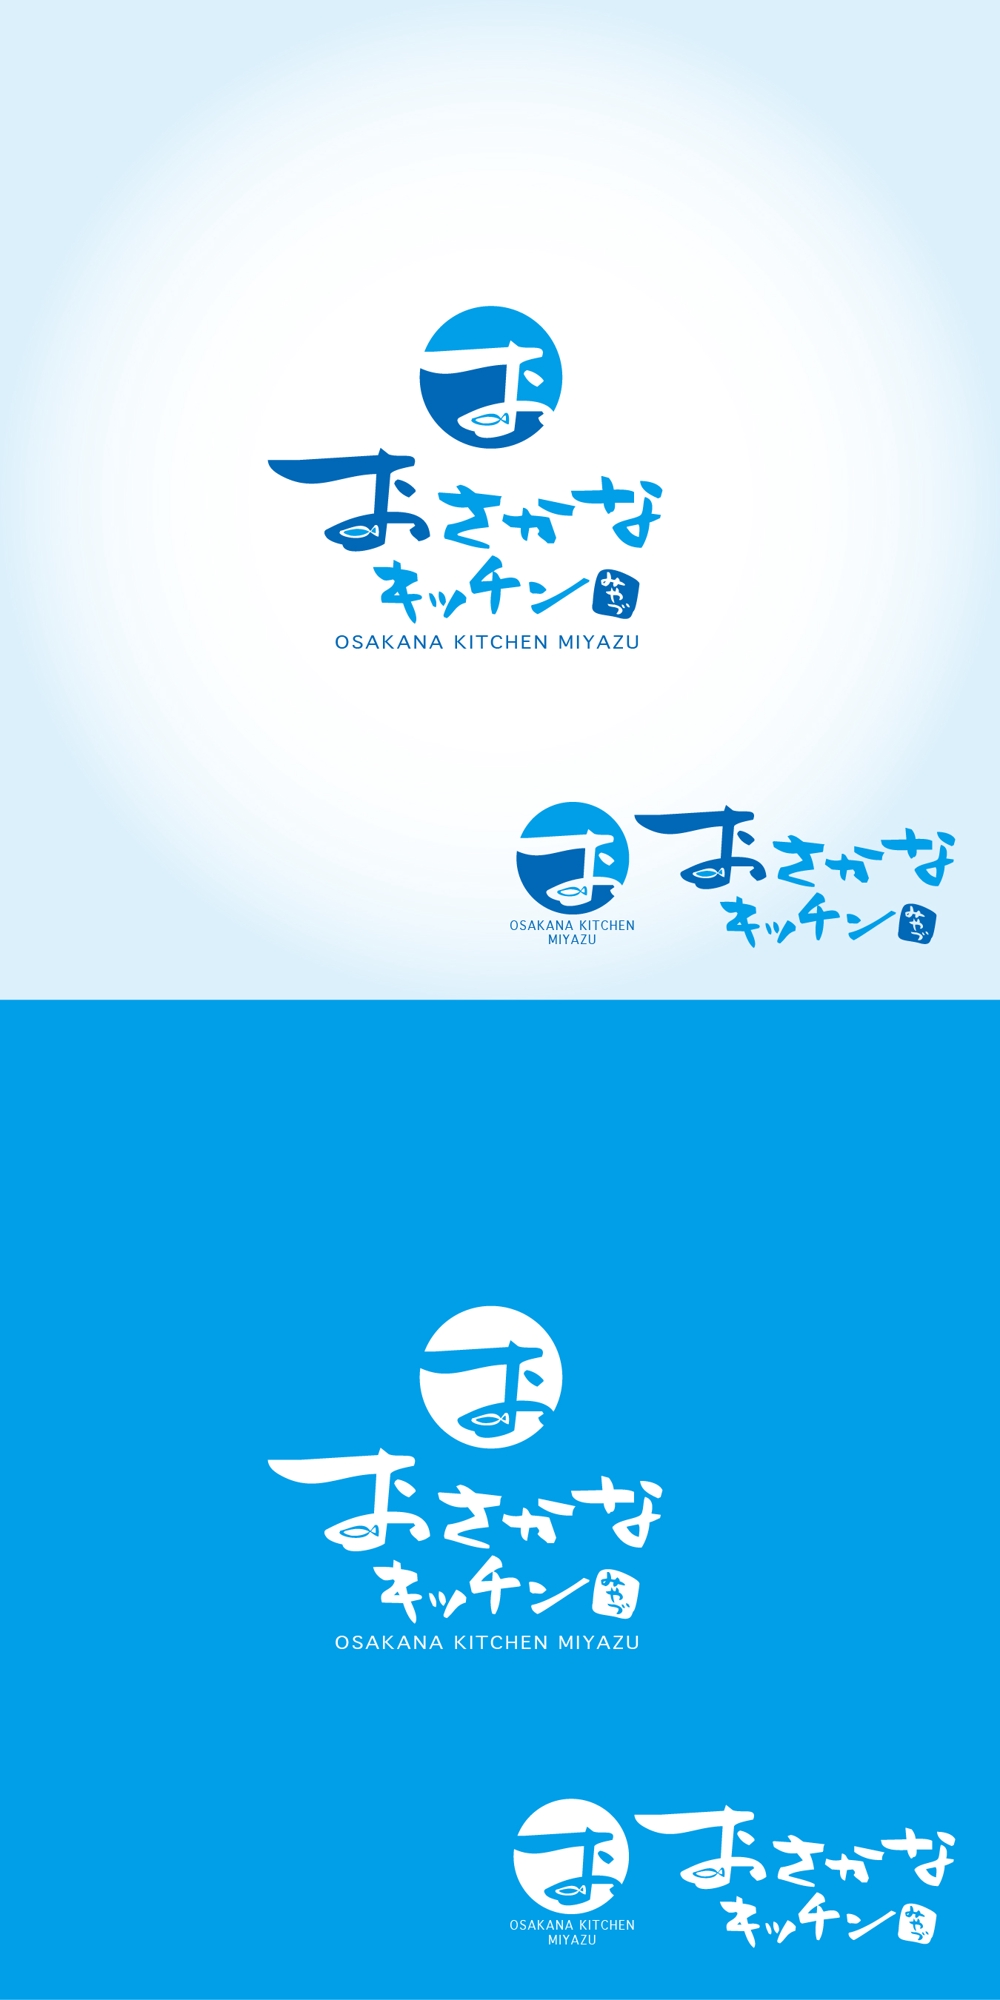 道の駅の新施設「おさかなキッチンみやづ」のロゴ